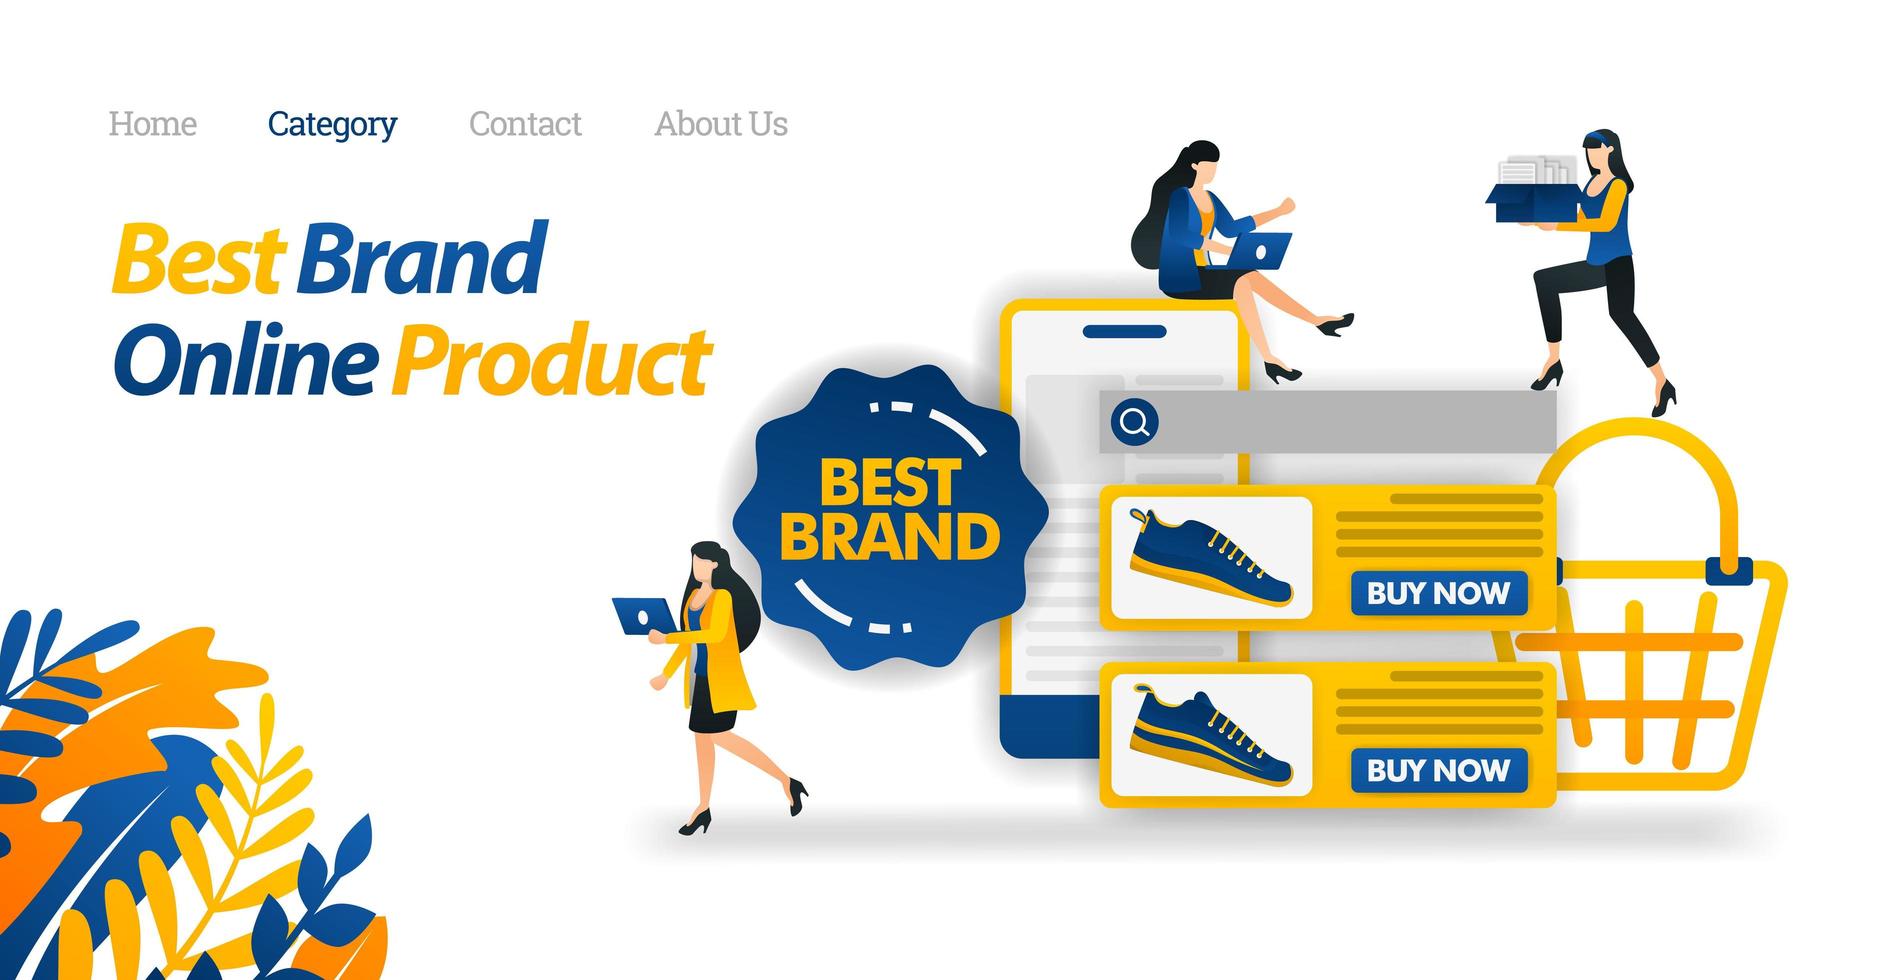 Finden Sie eine Vielzahl von Produkten der besten Marke mit Handy. empfehlen die beste Auswahl an Online-Produkten. flache Symbolart der Vektorillustration geeignet für Web-Landingpage, Aufkleber, Tapete, Karte, Hintergrund vektor